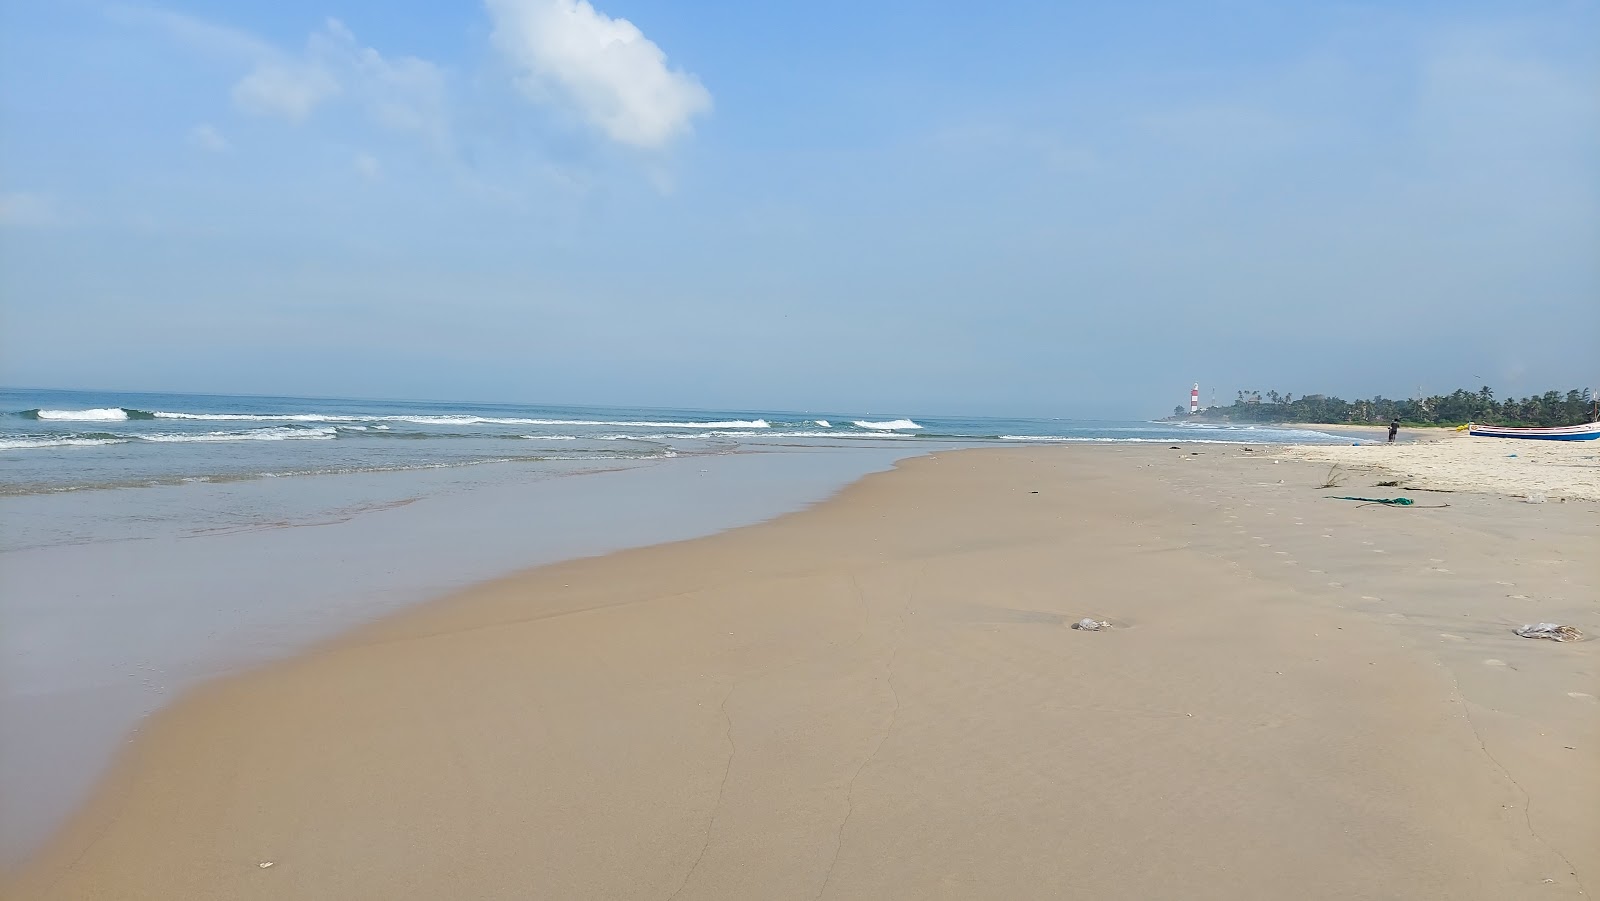 Fotografie cu Suratkal Beach cu o suprafață de nisip strălucitor